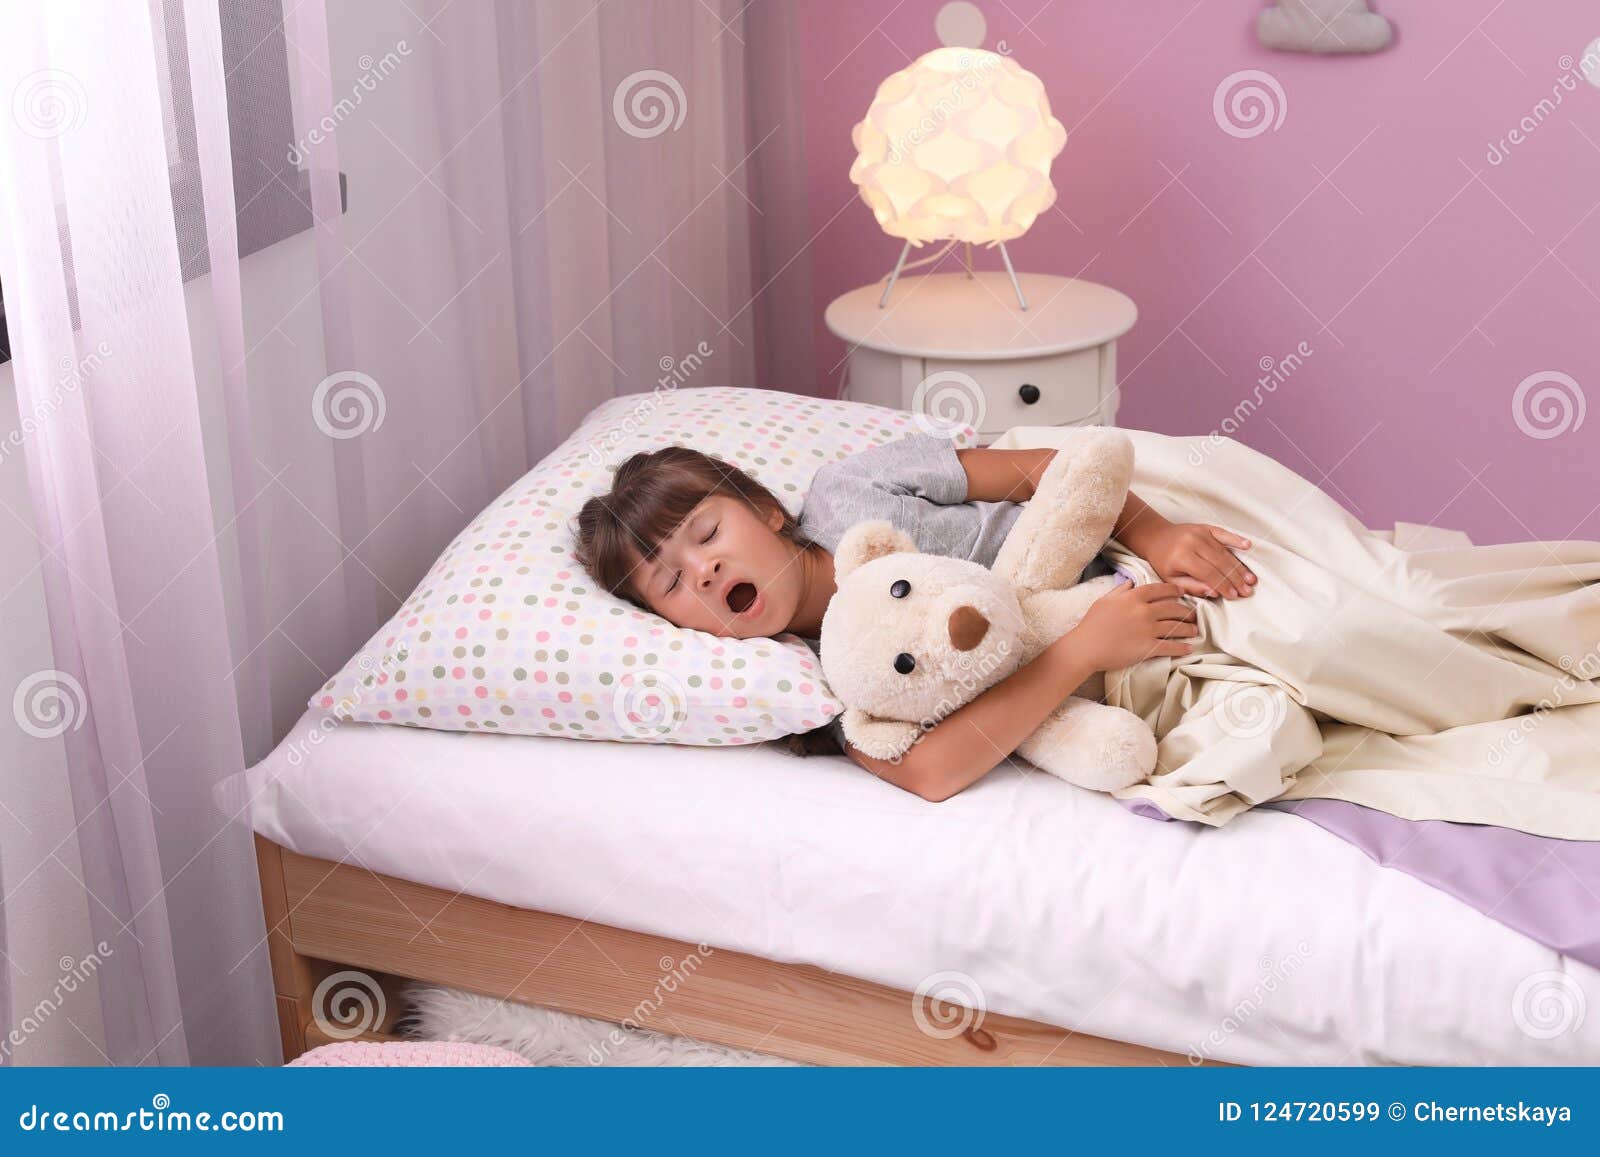 Сестра пришла. Маленькую девочку в постель. Маленькая девочка в кроватке. Маленькая девочка спит на кровати. Маленькая в постели.